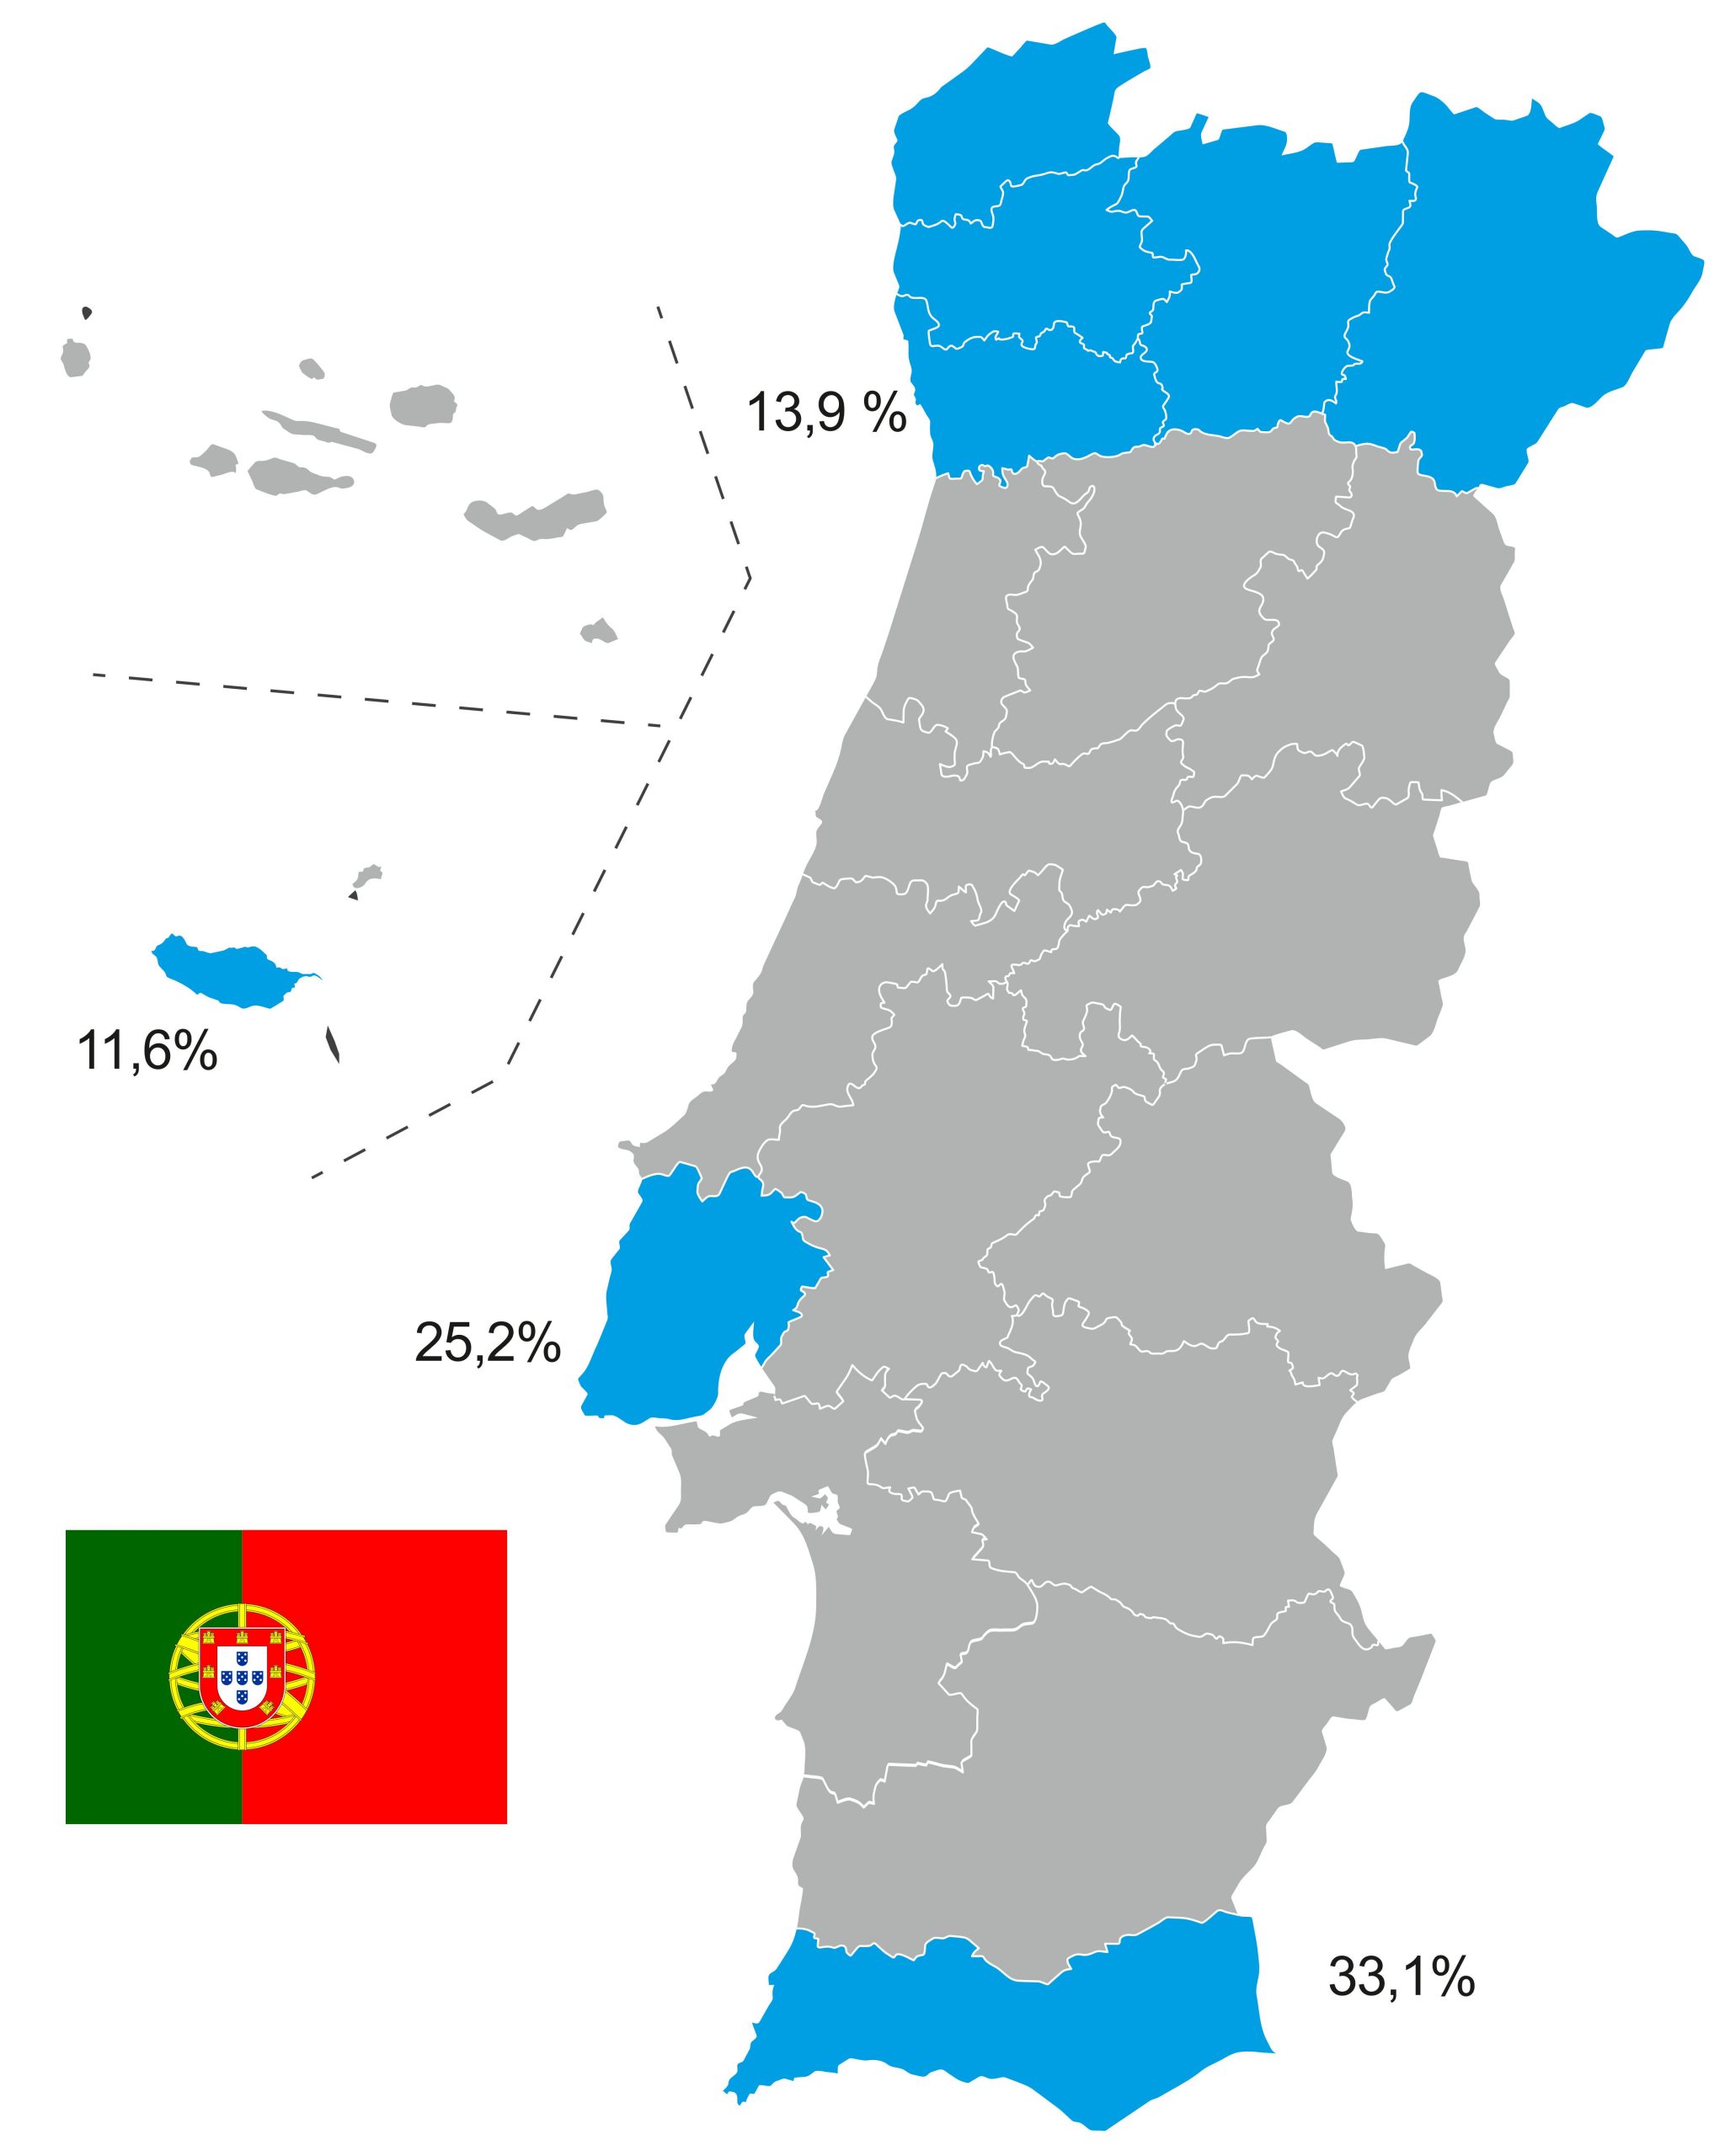 Mapa do Turismo em Portugal 2017